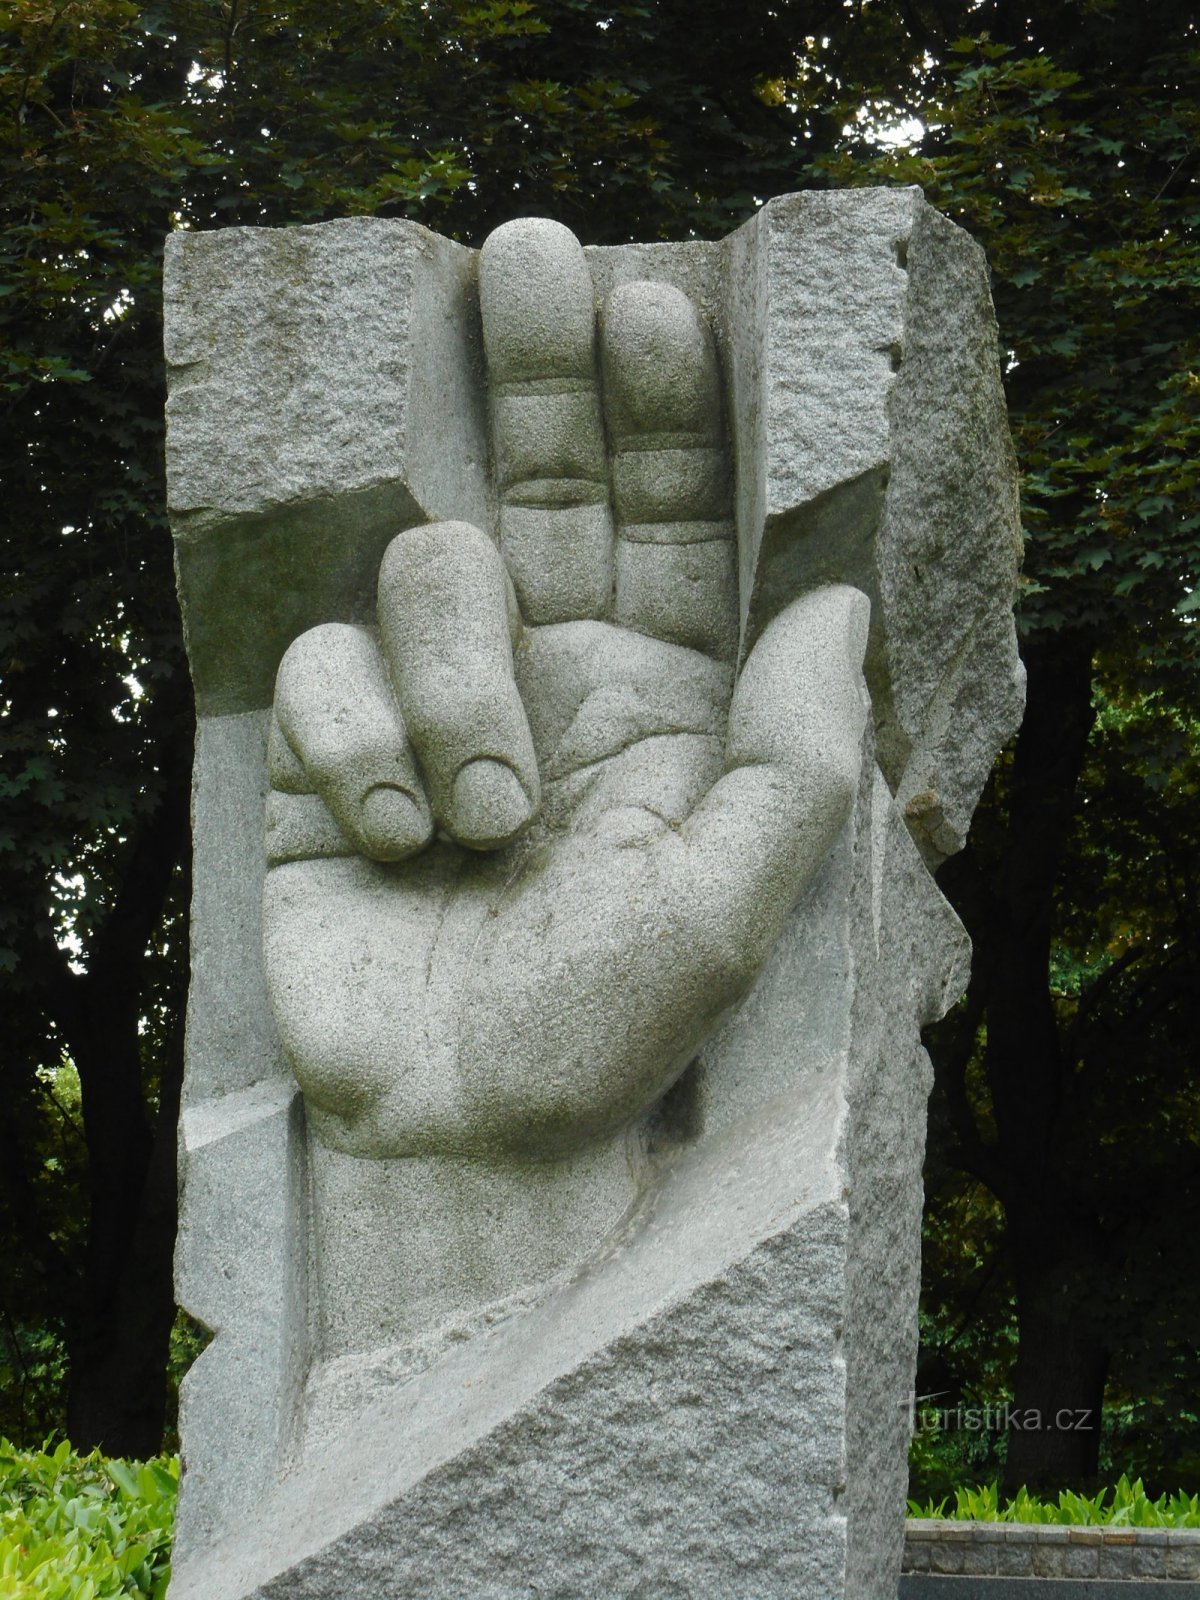 Đài tưởng niệm các nạn nhân của Thế chiến I và Thế chiến II Chiến tranh thế giới ở Chrudim